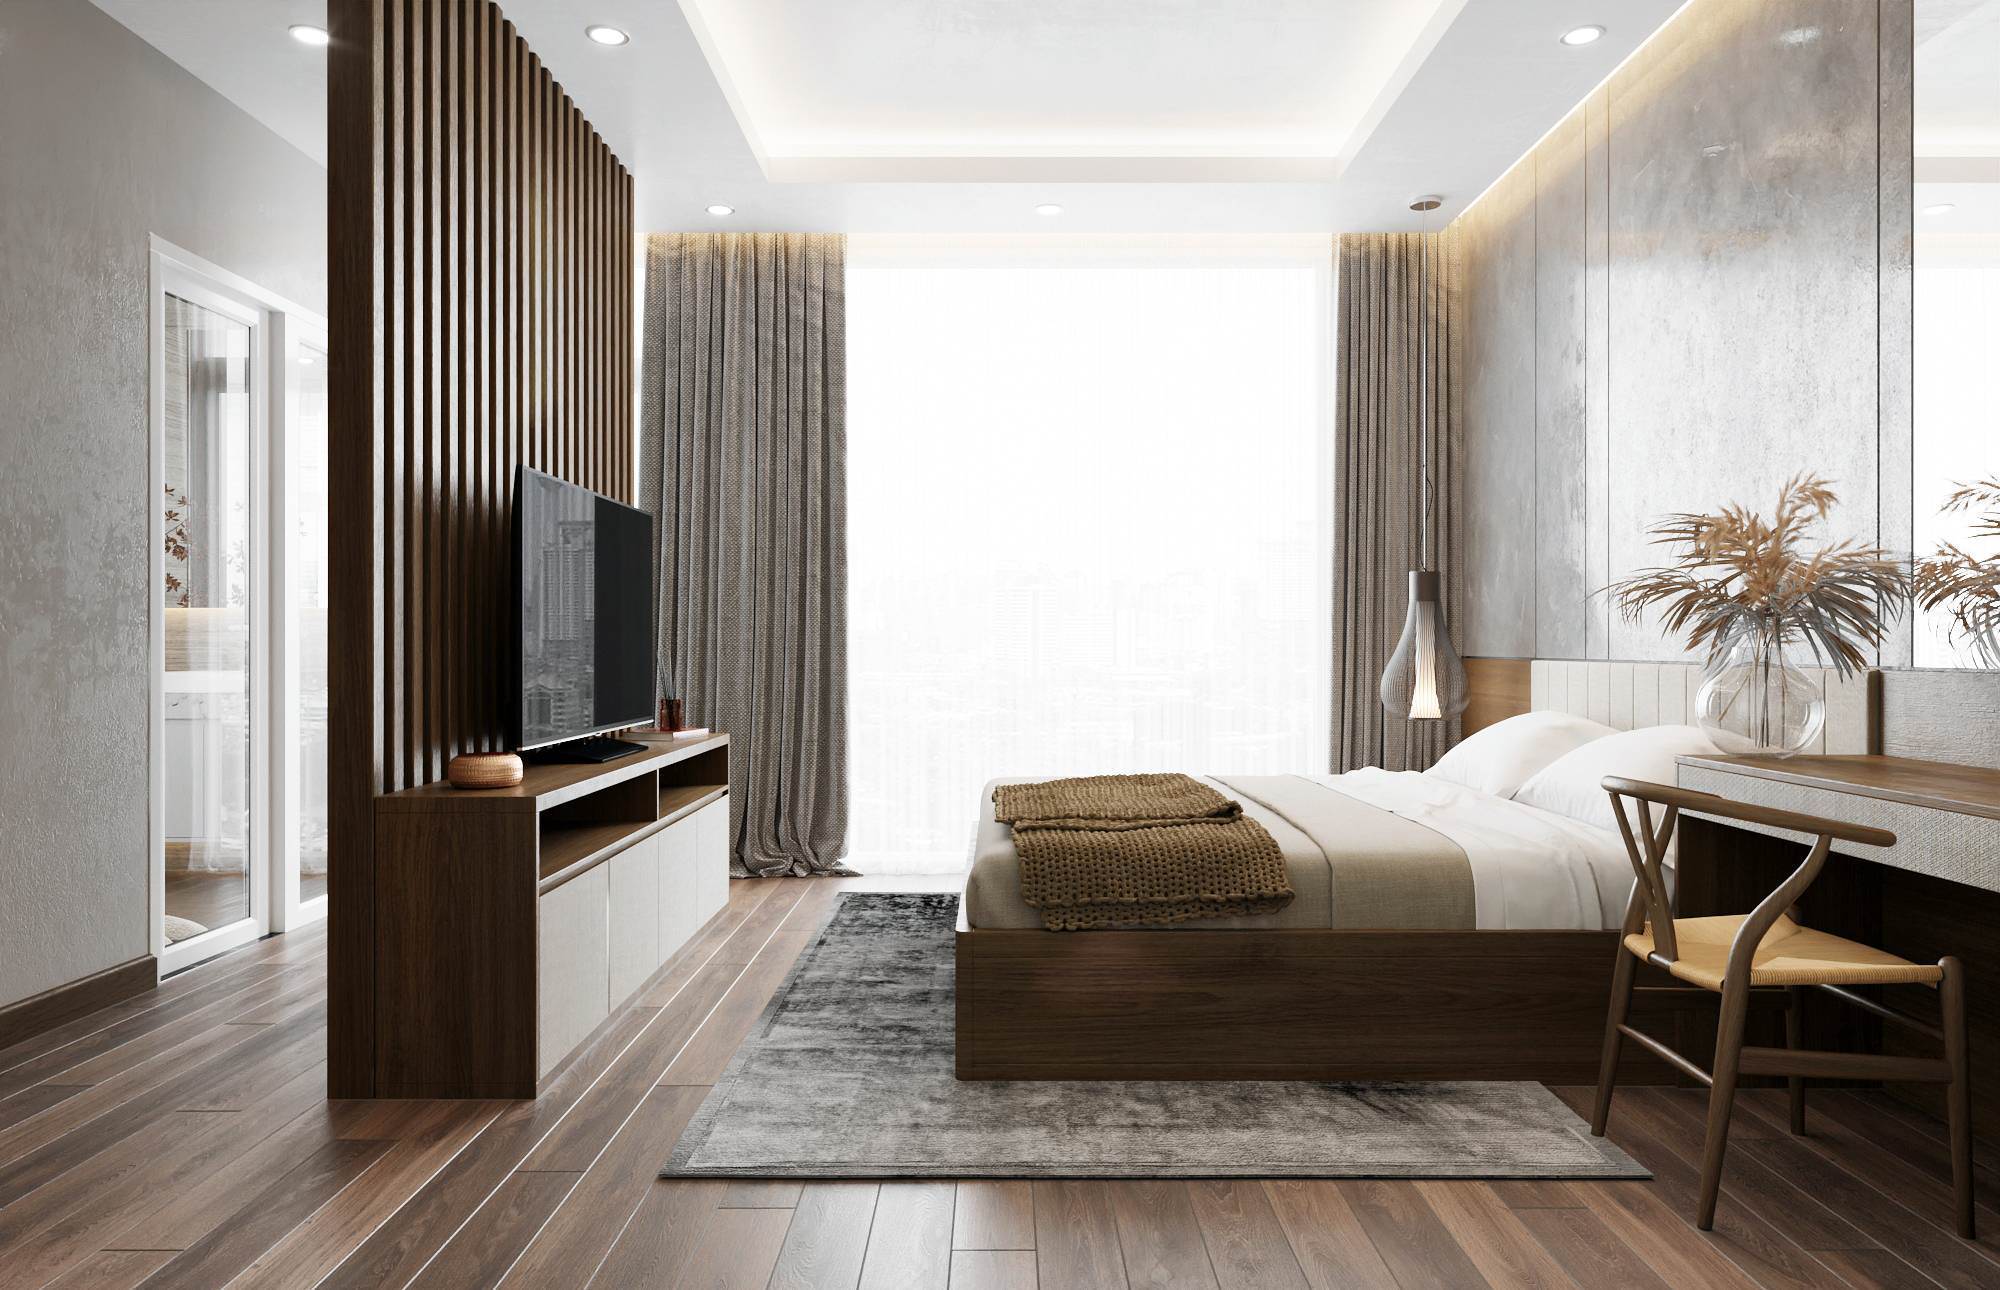 Lát nền phòng ngủ giả vân gỗ đẹp mắt đem lại không gian chân thật, gần gũi